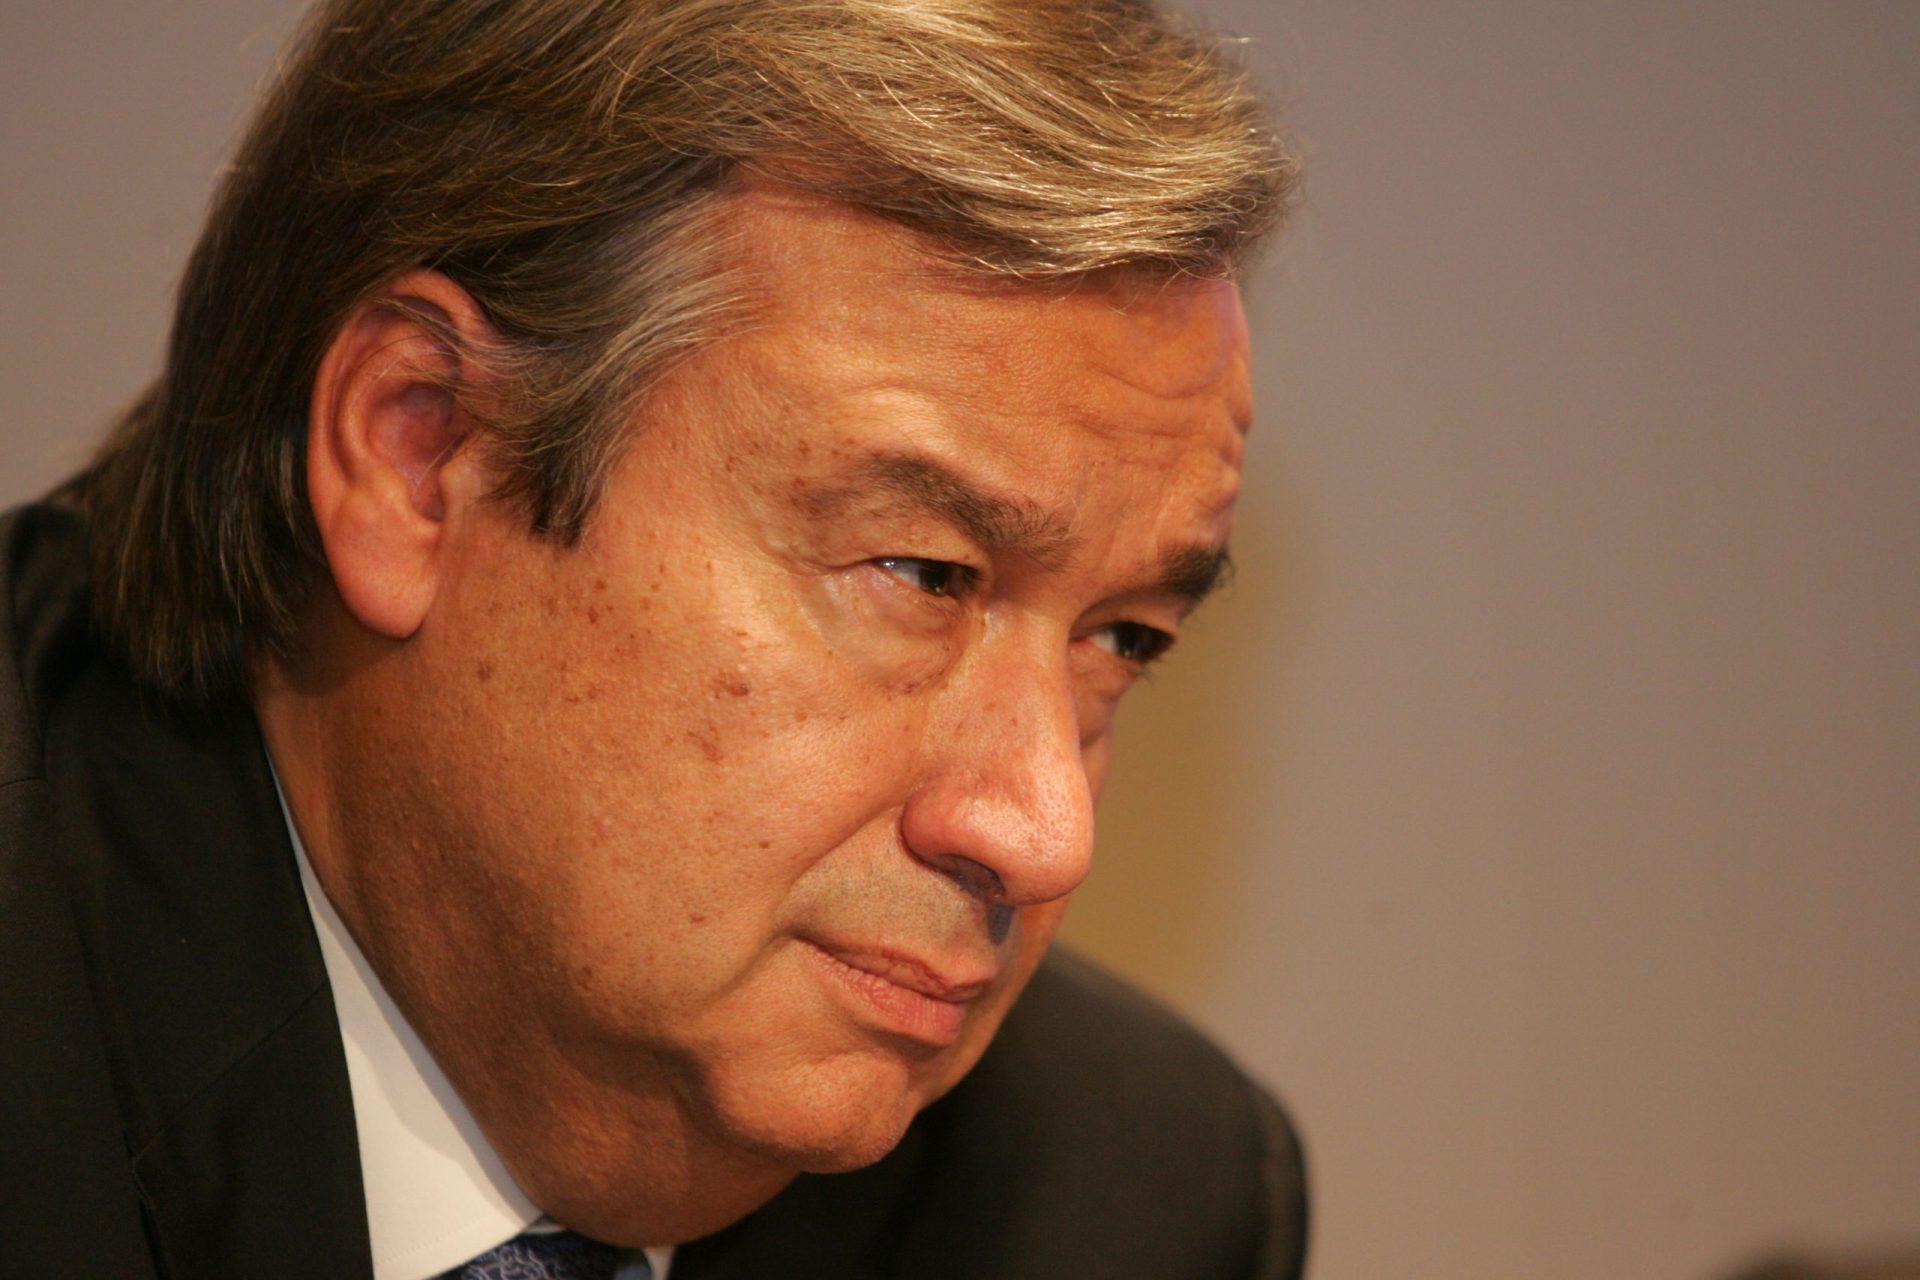 “Tenho uma dívida em relação ao PS”, diz Guterres